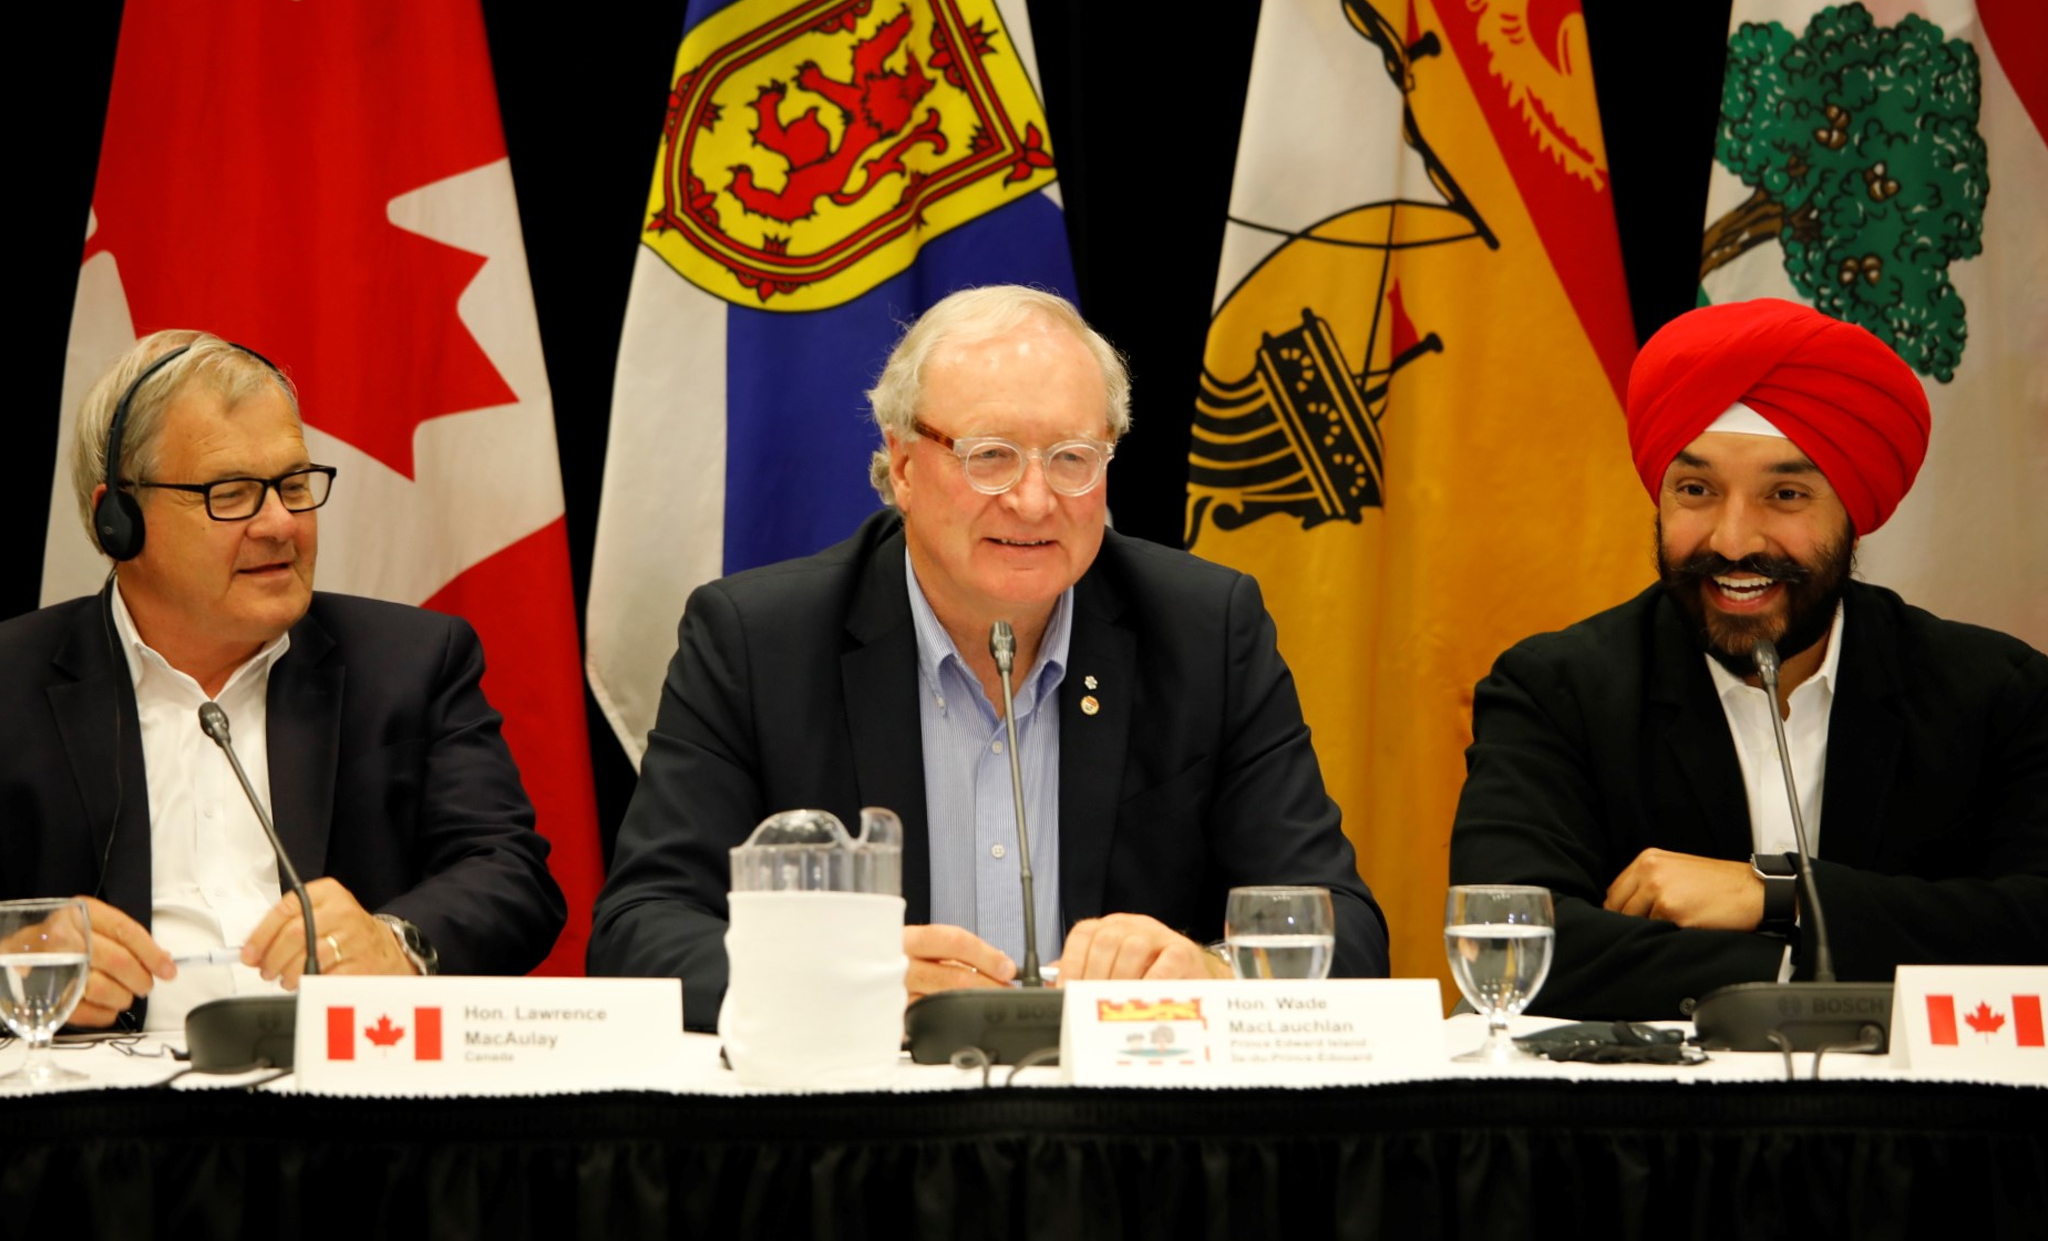 Le 10 juillet, 2018 - Des ministres fédéraux et provinciaux et les premiers ministres provinciaux se sont réunis à Summerside le 10 juillet 2018 pour discuter des progrès réalisés et annoncer de nouvelles initiatives dans le cadre de la Stratégie de croissance pour l’Atlantique. Les participants, de gauche à droite, étaient l’honorable Brian Gallant, premier ministre du Nouveau‑Brunswick; l’honorable Lawrence MacAulay, ministre de l’Agriculture et de l’Agroalimentaire; l’honorable Dwight Ball, premier ministre de Terre‑Neuve‑et‑Labrador; l’honorable Dominic LeBlanc, ministre des Pêches, des Océans et de la Garde côtière canadienne; l’honorable H. Wade MacLauchlan, premier ministre de l’Île‑du‑Prince‑Édouard; l’honorable Ginette Petitpas Taylor, ministre de la Santé; l’honorable Ahmed D. Hussen, ministre de l’Immigration, des Réfugiés et de la Citoyenneté; l’honorable Scott Brison, président du Conseil du Trésor; l’honorable Seamus O’Regan, ministre des Anciens Combattants et ministre associé de la Défense nationale; l’honorable Stephen McNeil, premier ministre de la Nouvelle‑Écosse; et l’honorable Navdeep Bains, ministre de l’Innovation, des Sciences et du Développement économique et ministre responsable de l’Agence de promotion économique du Canada atlantique.